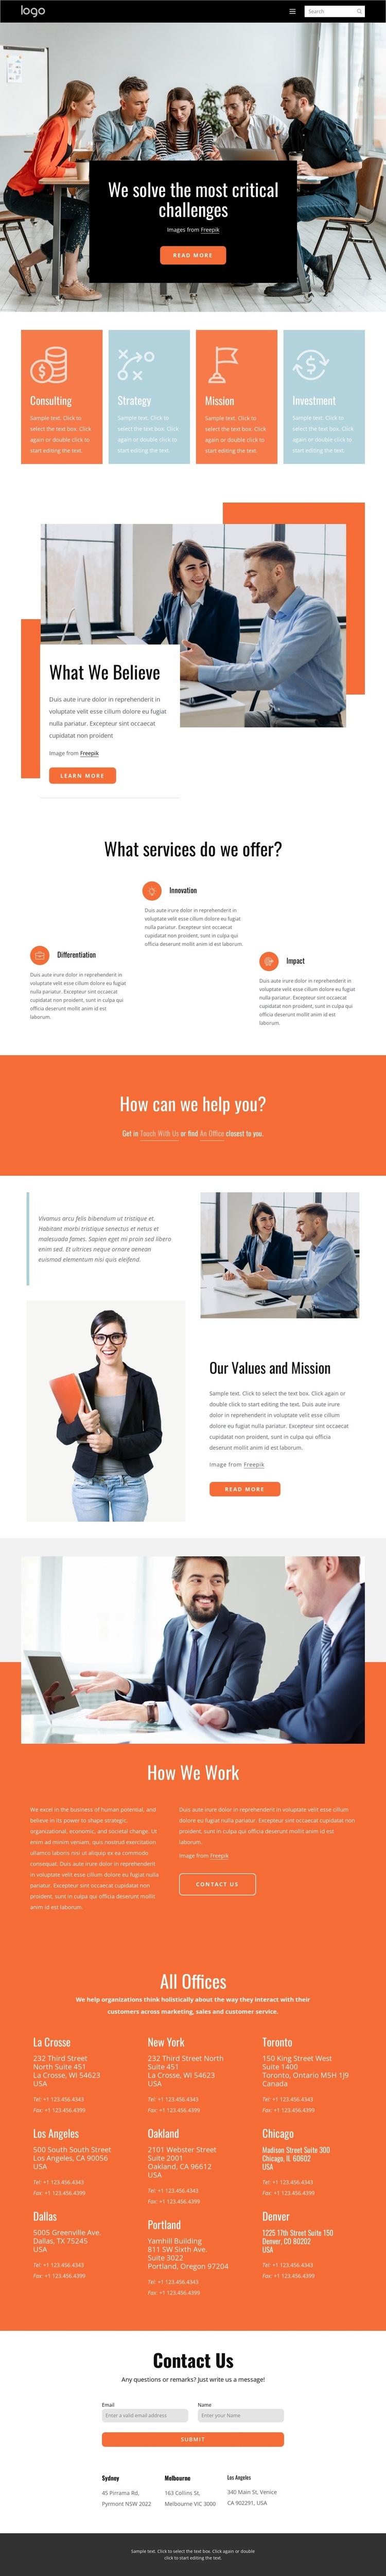 We help clients solve complex business problems Web Page Design